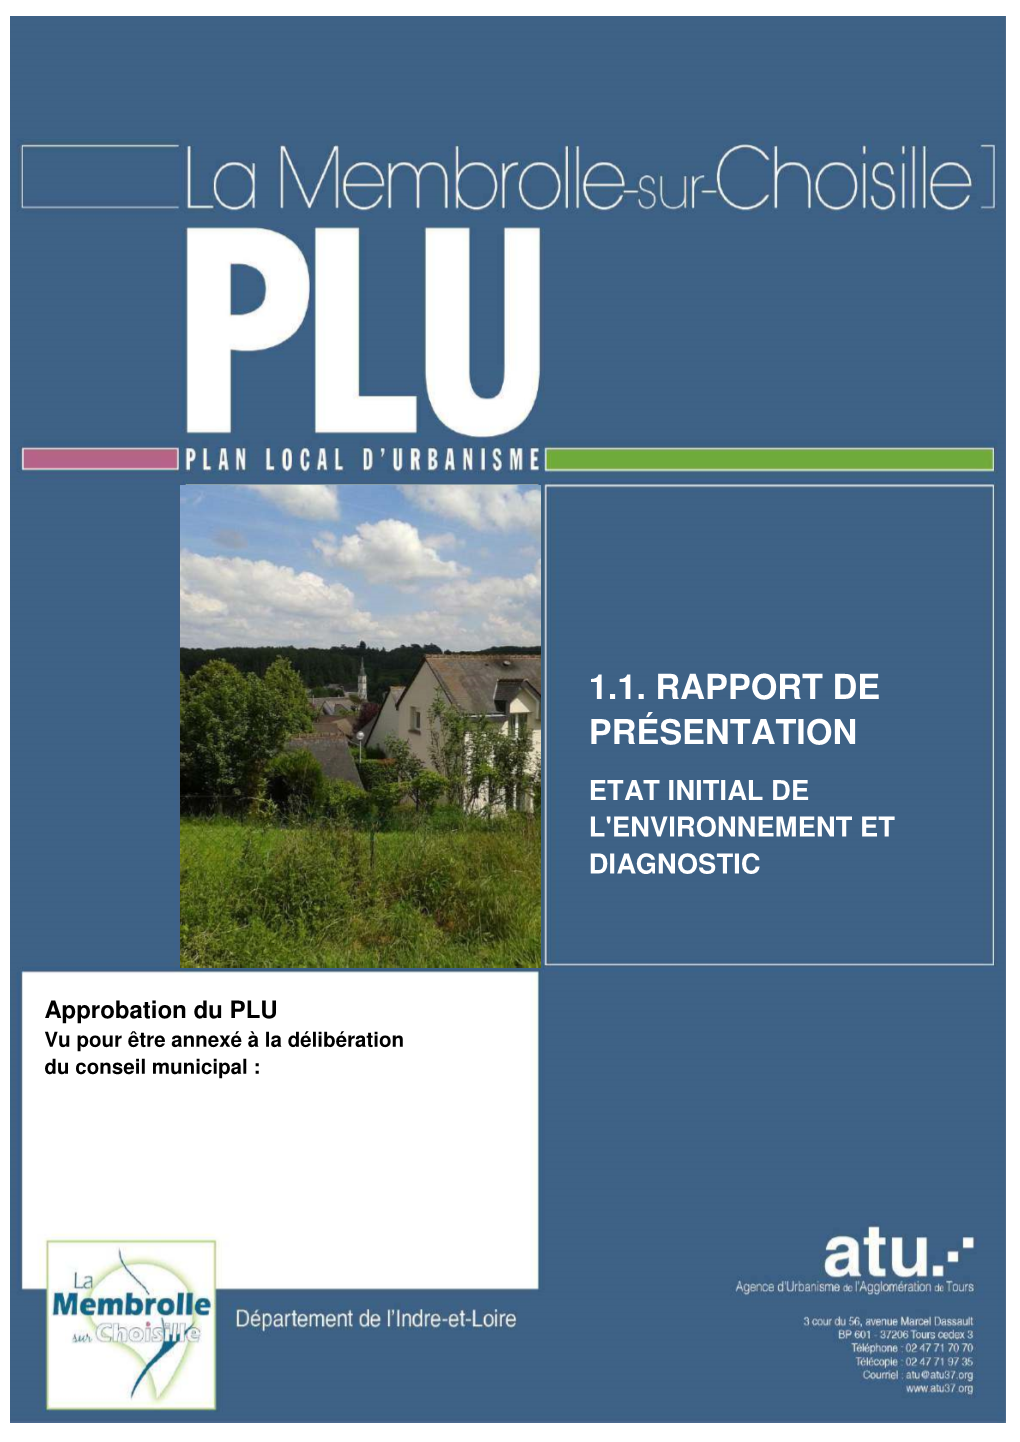 1.1. Rapport De Présentation Etat Initial De L'environnement Et Diagnostic